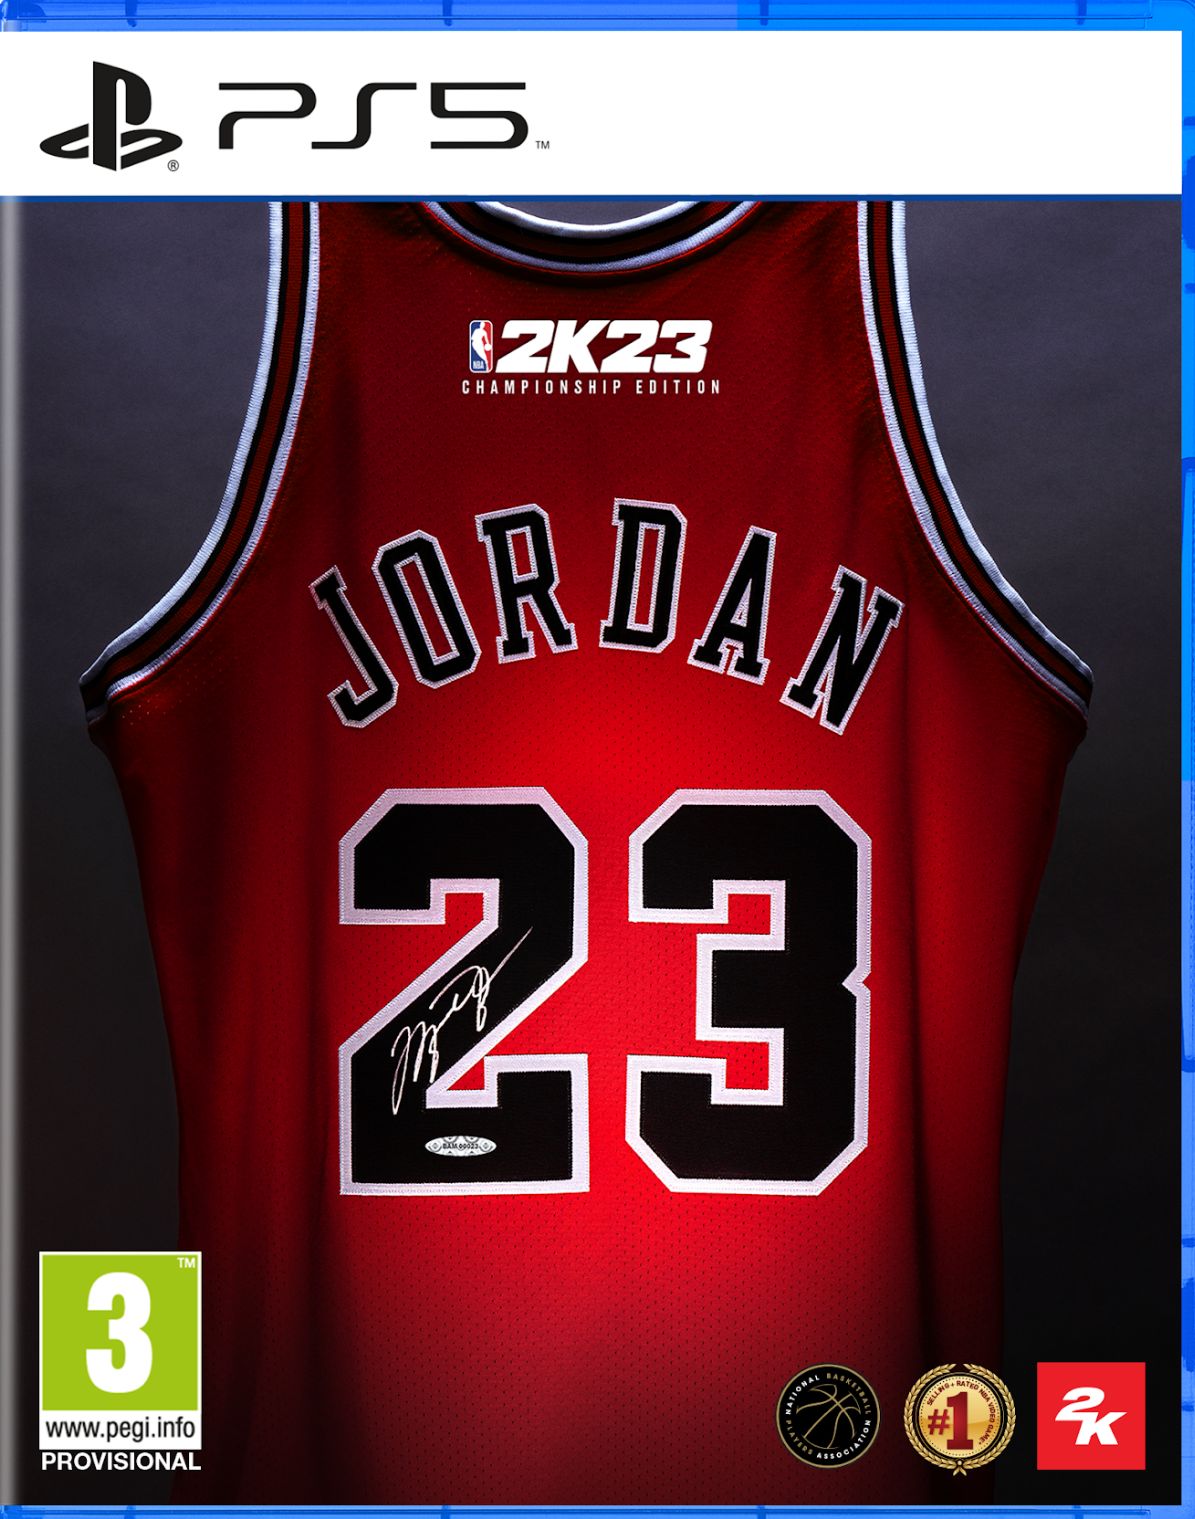 A camisa de Michael Jordan.